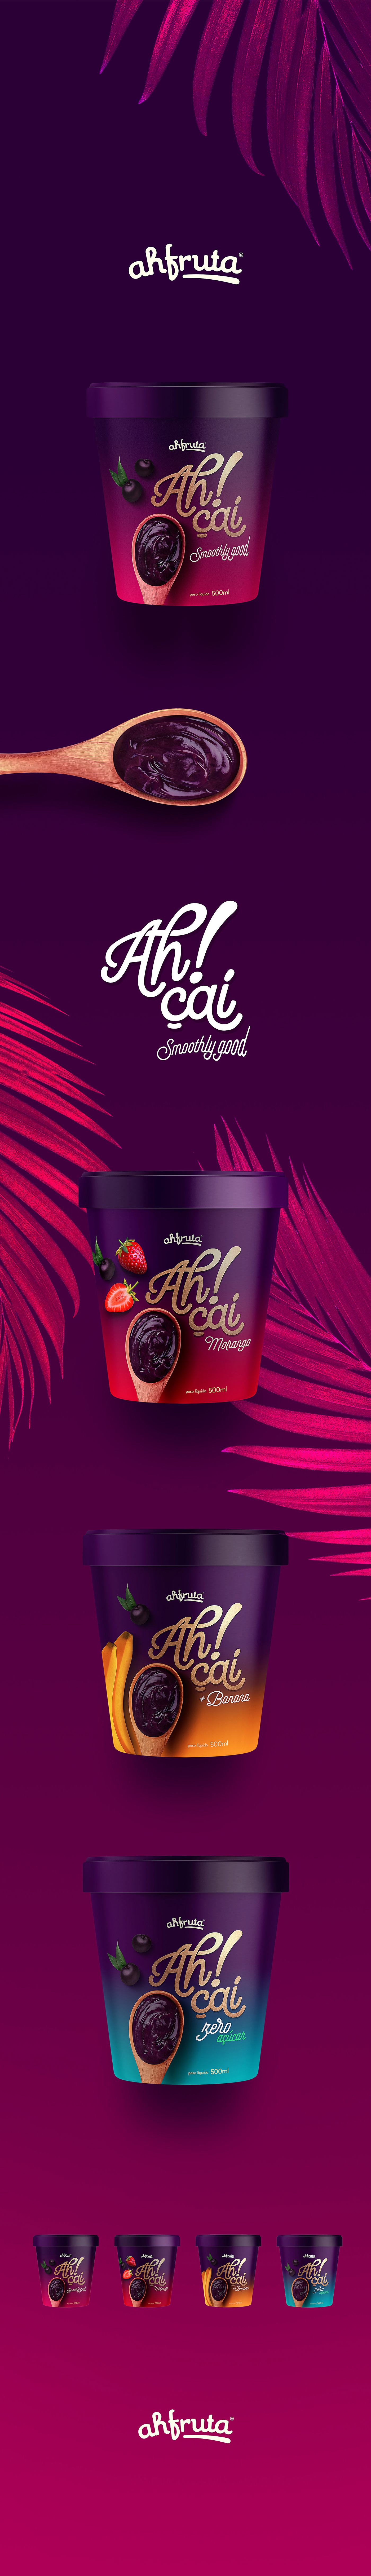 acai brand branding  design Fruit package Packaging